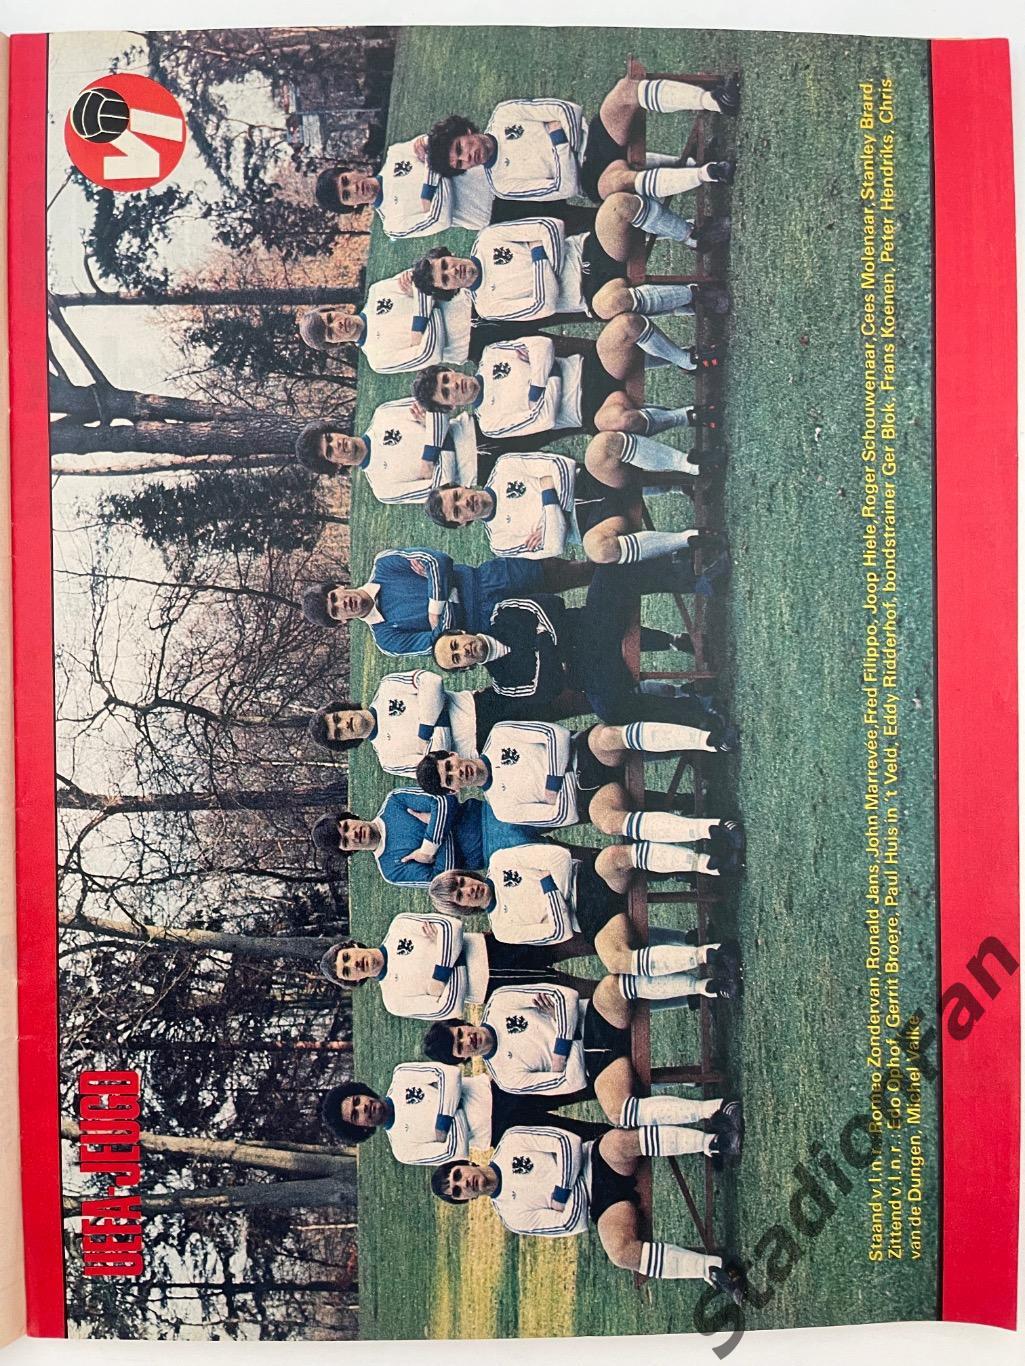 Журнал Voetbal nr.12 - 1977 год. 5